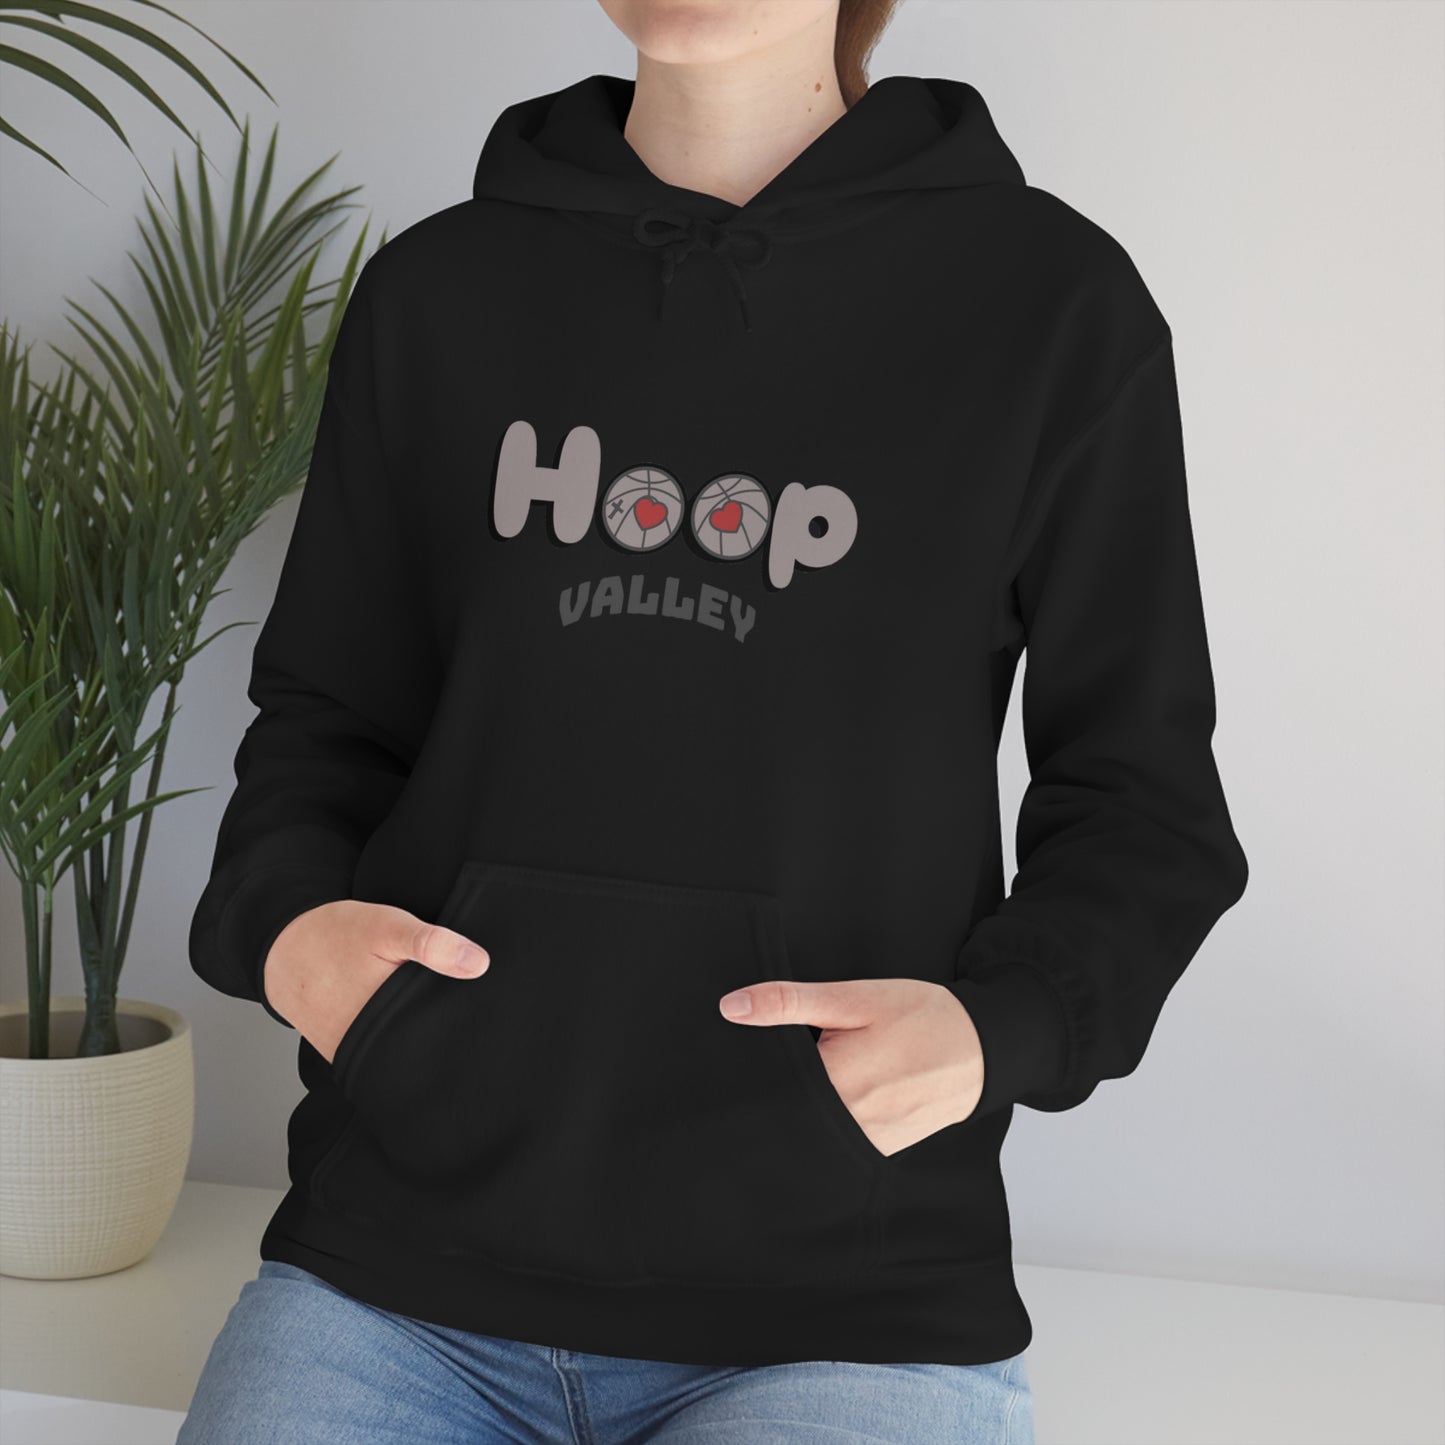 Hoop Valley Heavy Hooded Sweatshirt White/Brown Design